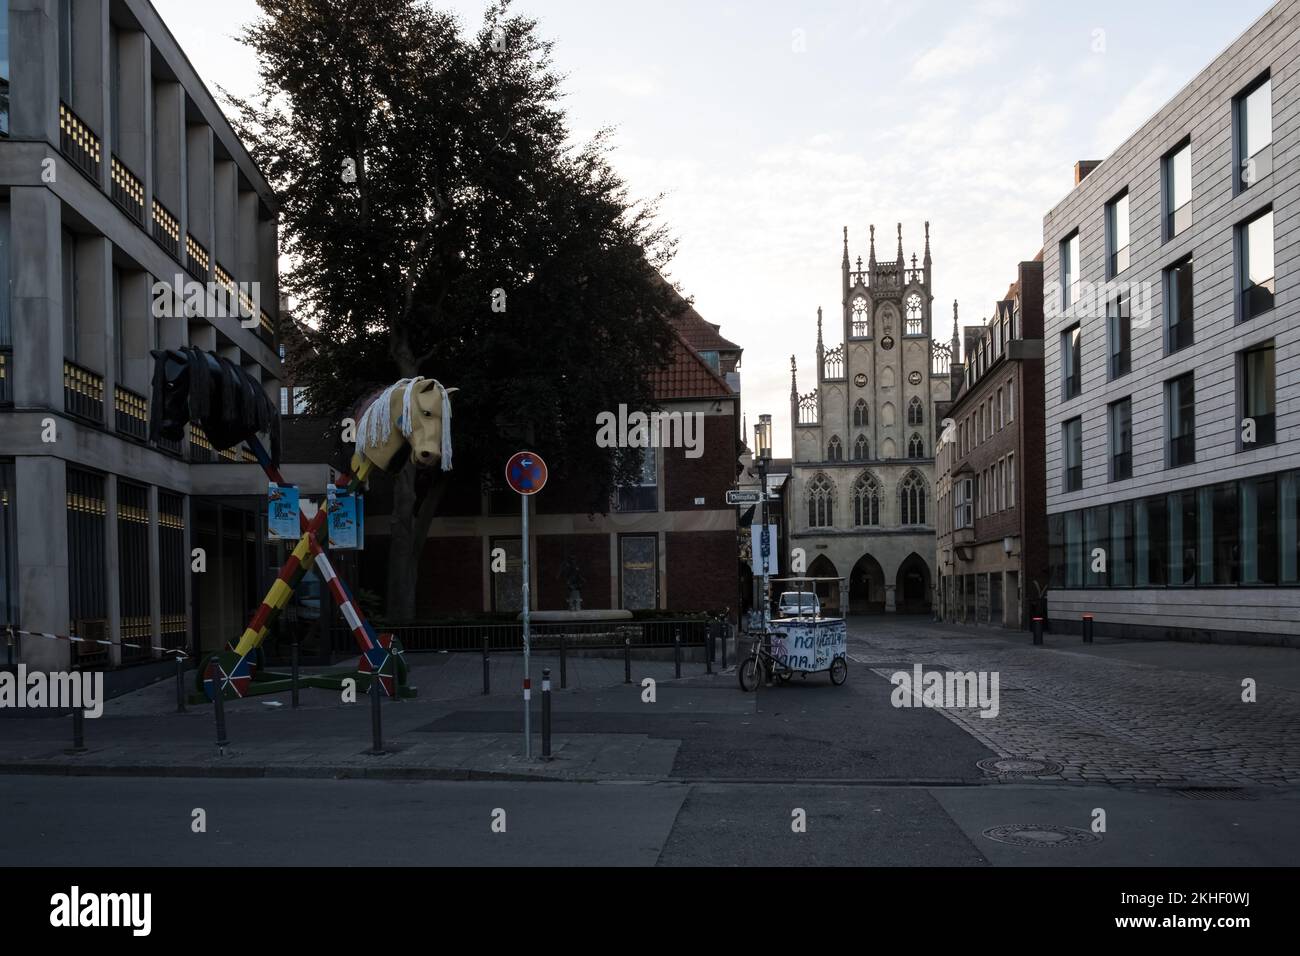 Dettaglio architettonico del centro storico di Münster, nella Renania settentrionale-Vestfalia. Sullo sfondo, lo storico Municipio di Münster. Foto Stock